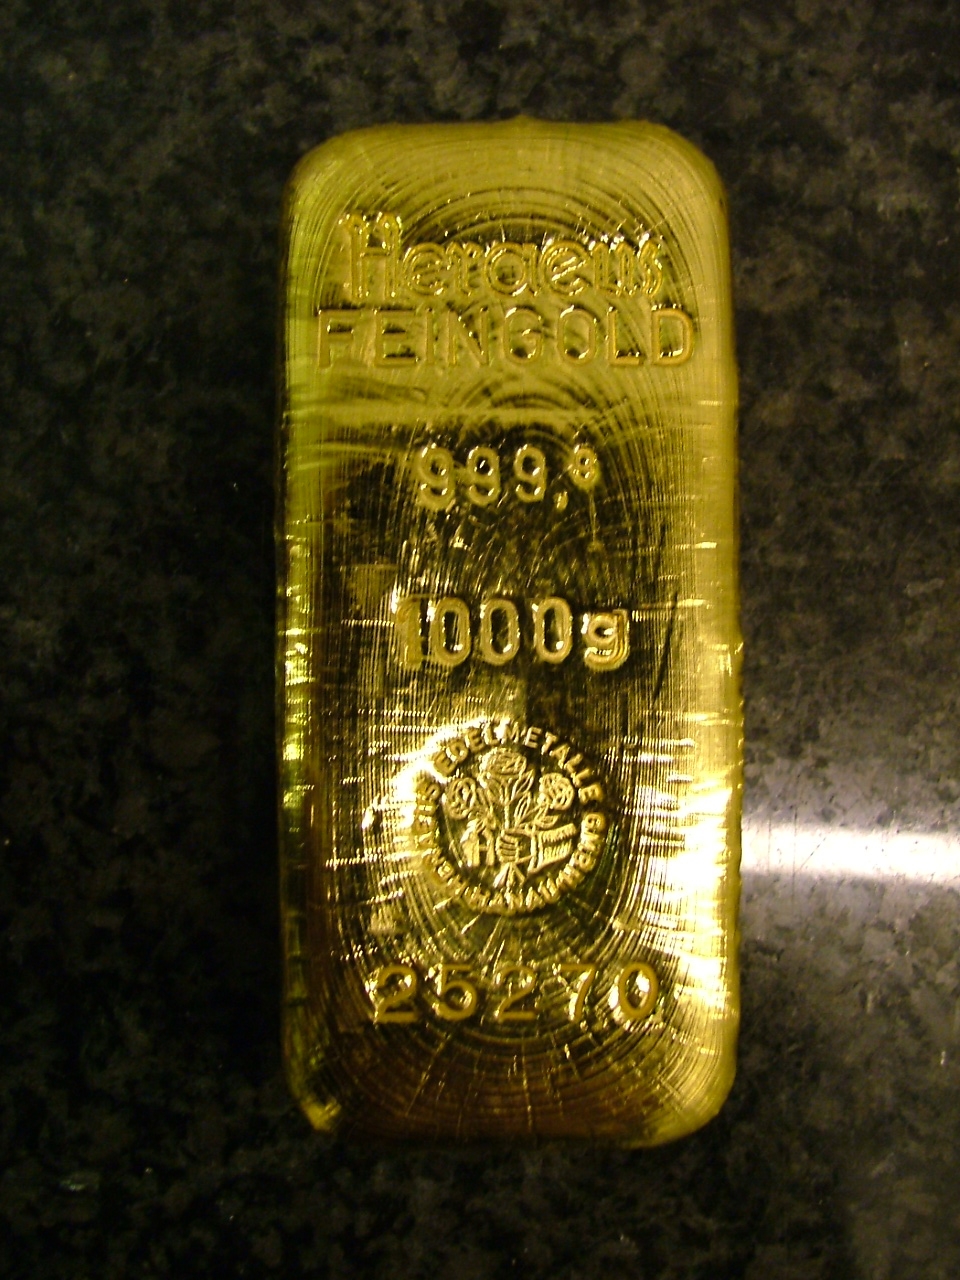 Сбербанк покупка золота цена